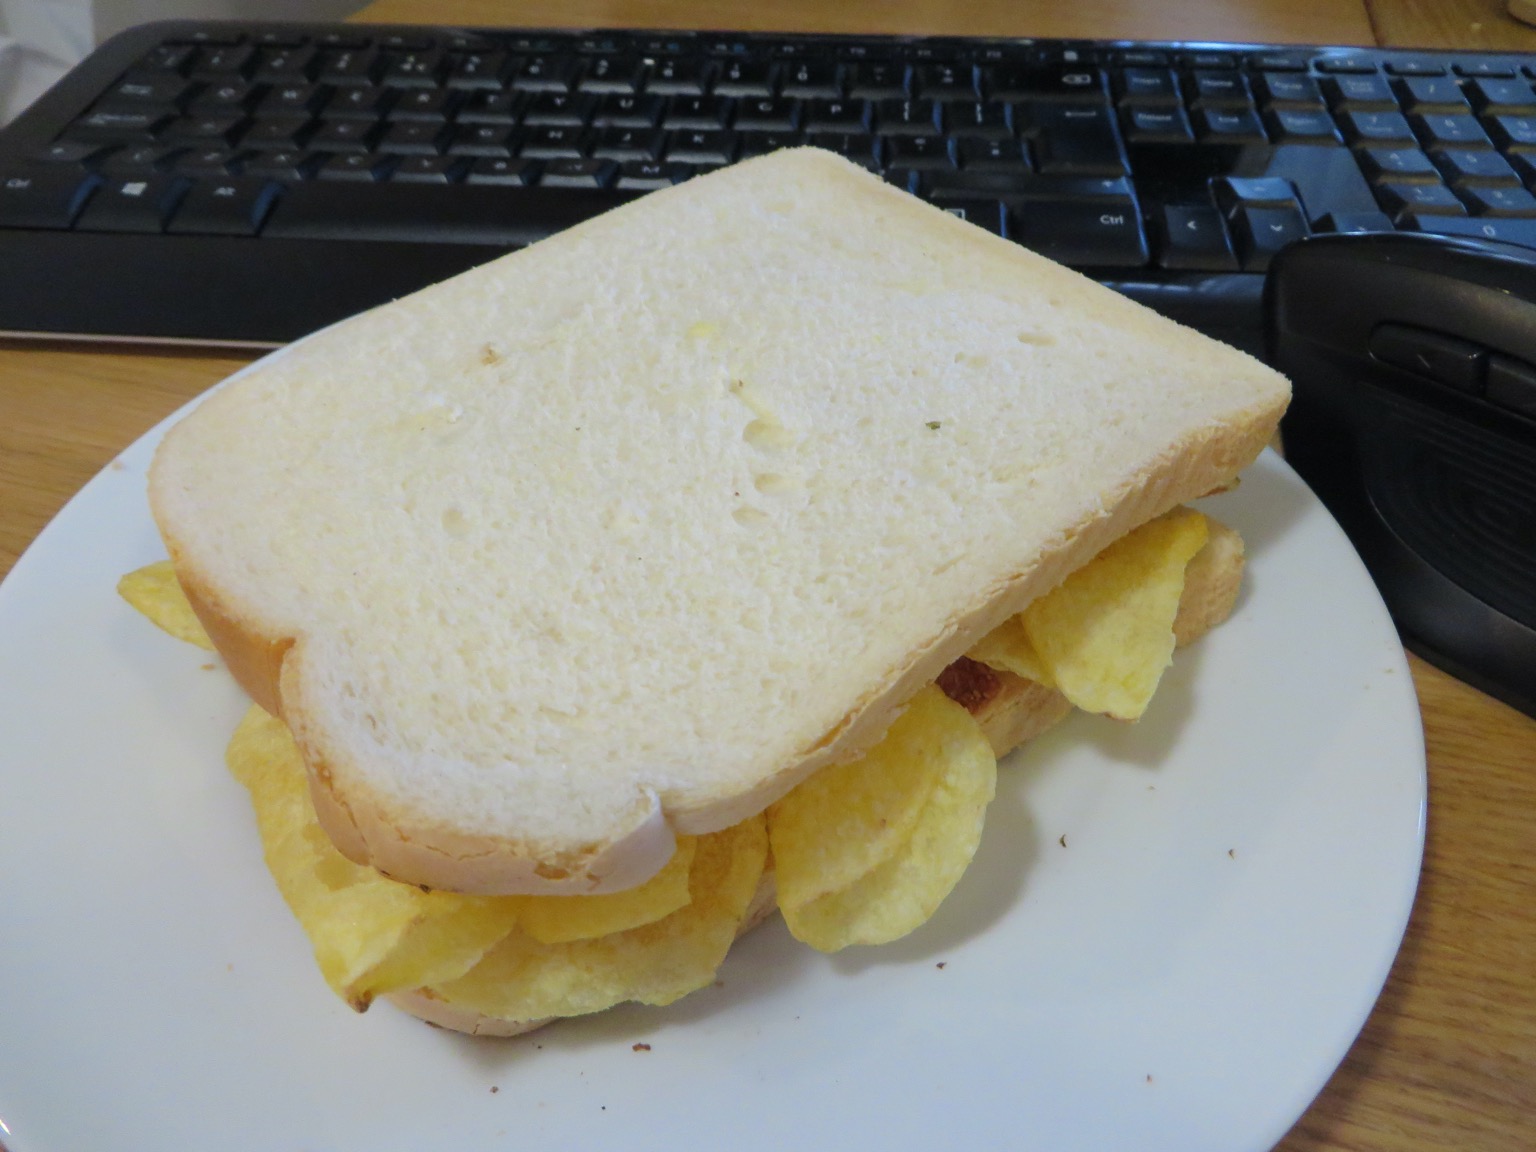 Crisp-filled white sandwich in front of a keyboard